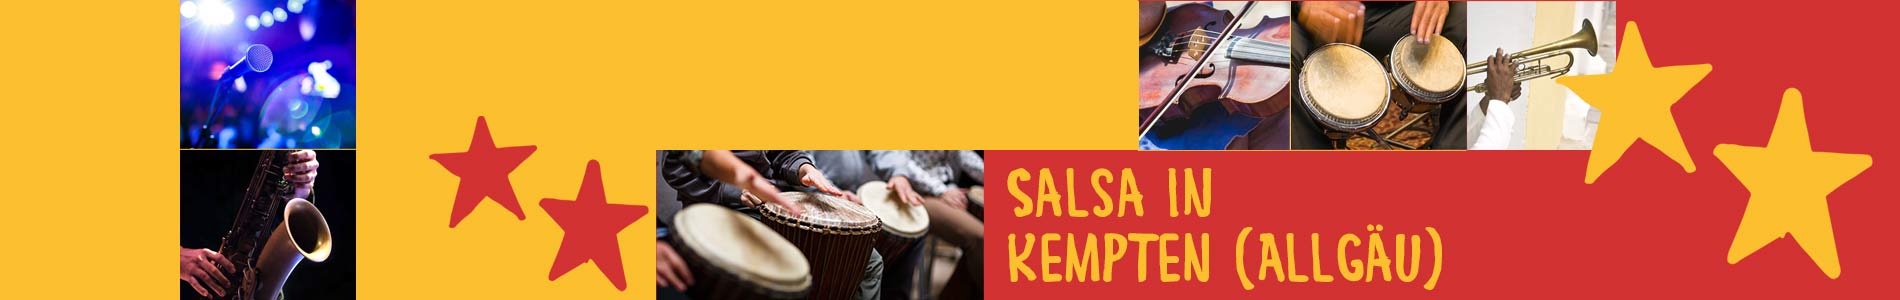 Salsa in Kempten (Allgäu) – Salsa lernen und tanzen, Tanzkurse, Partys, Veranstaltungen